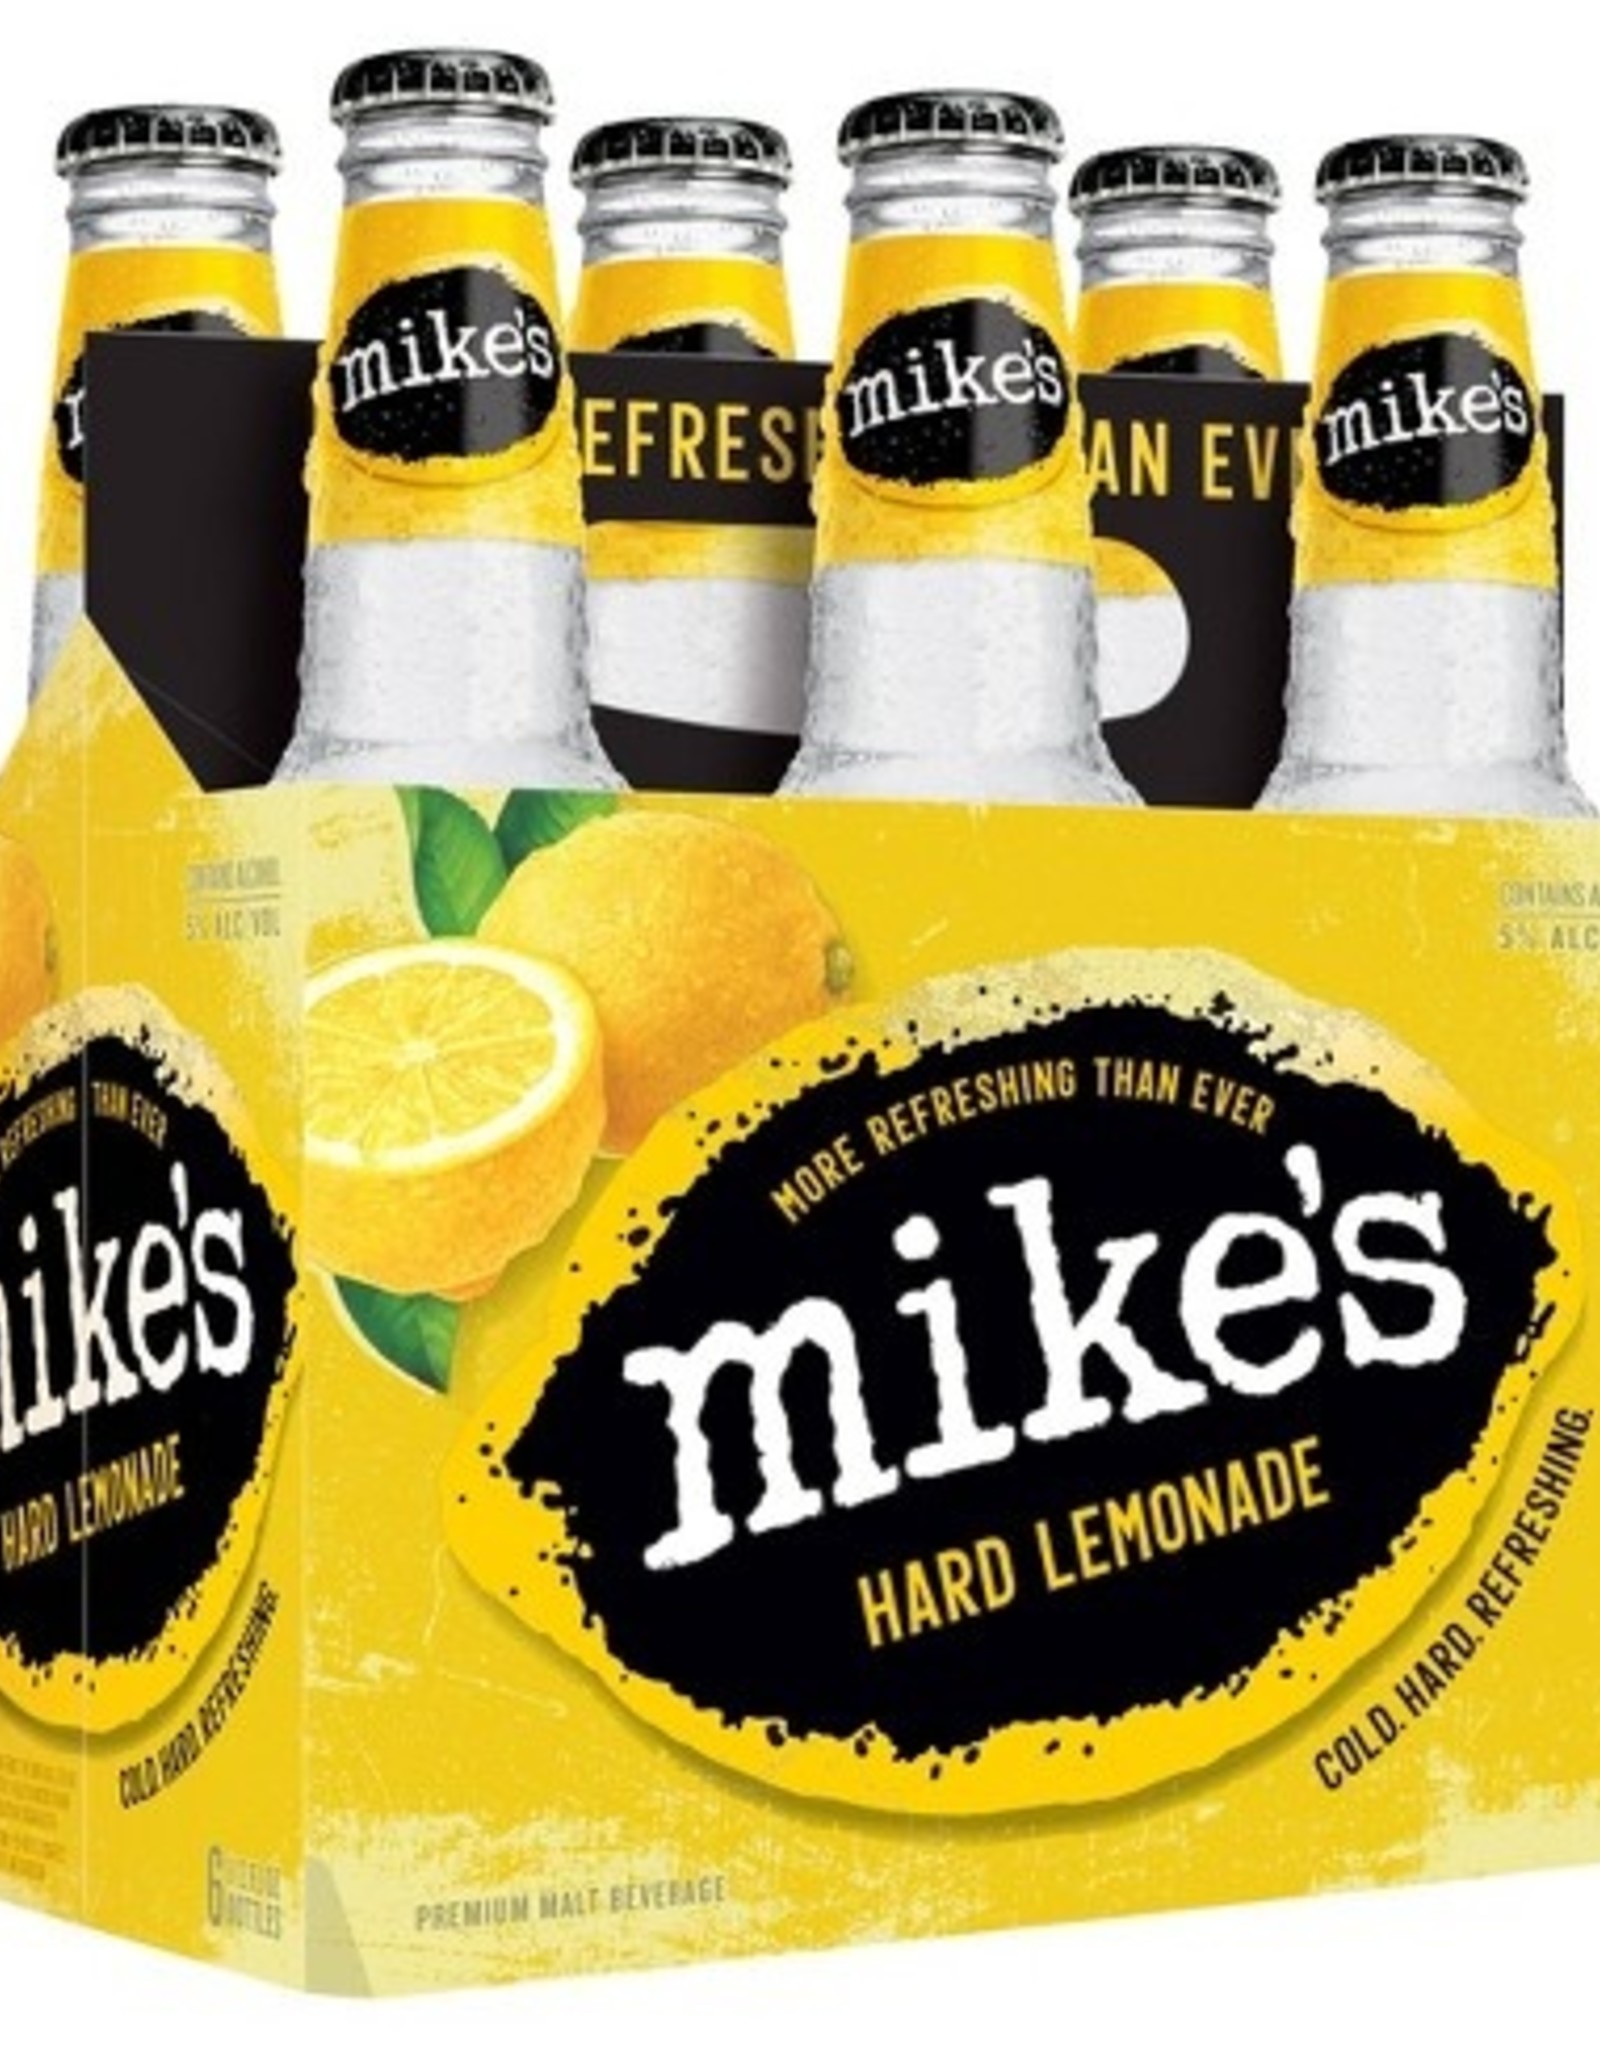 Mike's Hard Lemonade 6x12 oz bottles